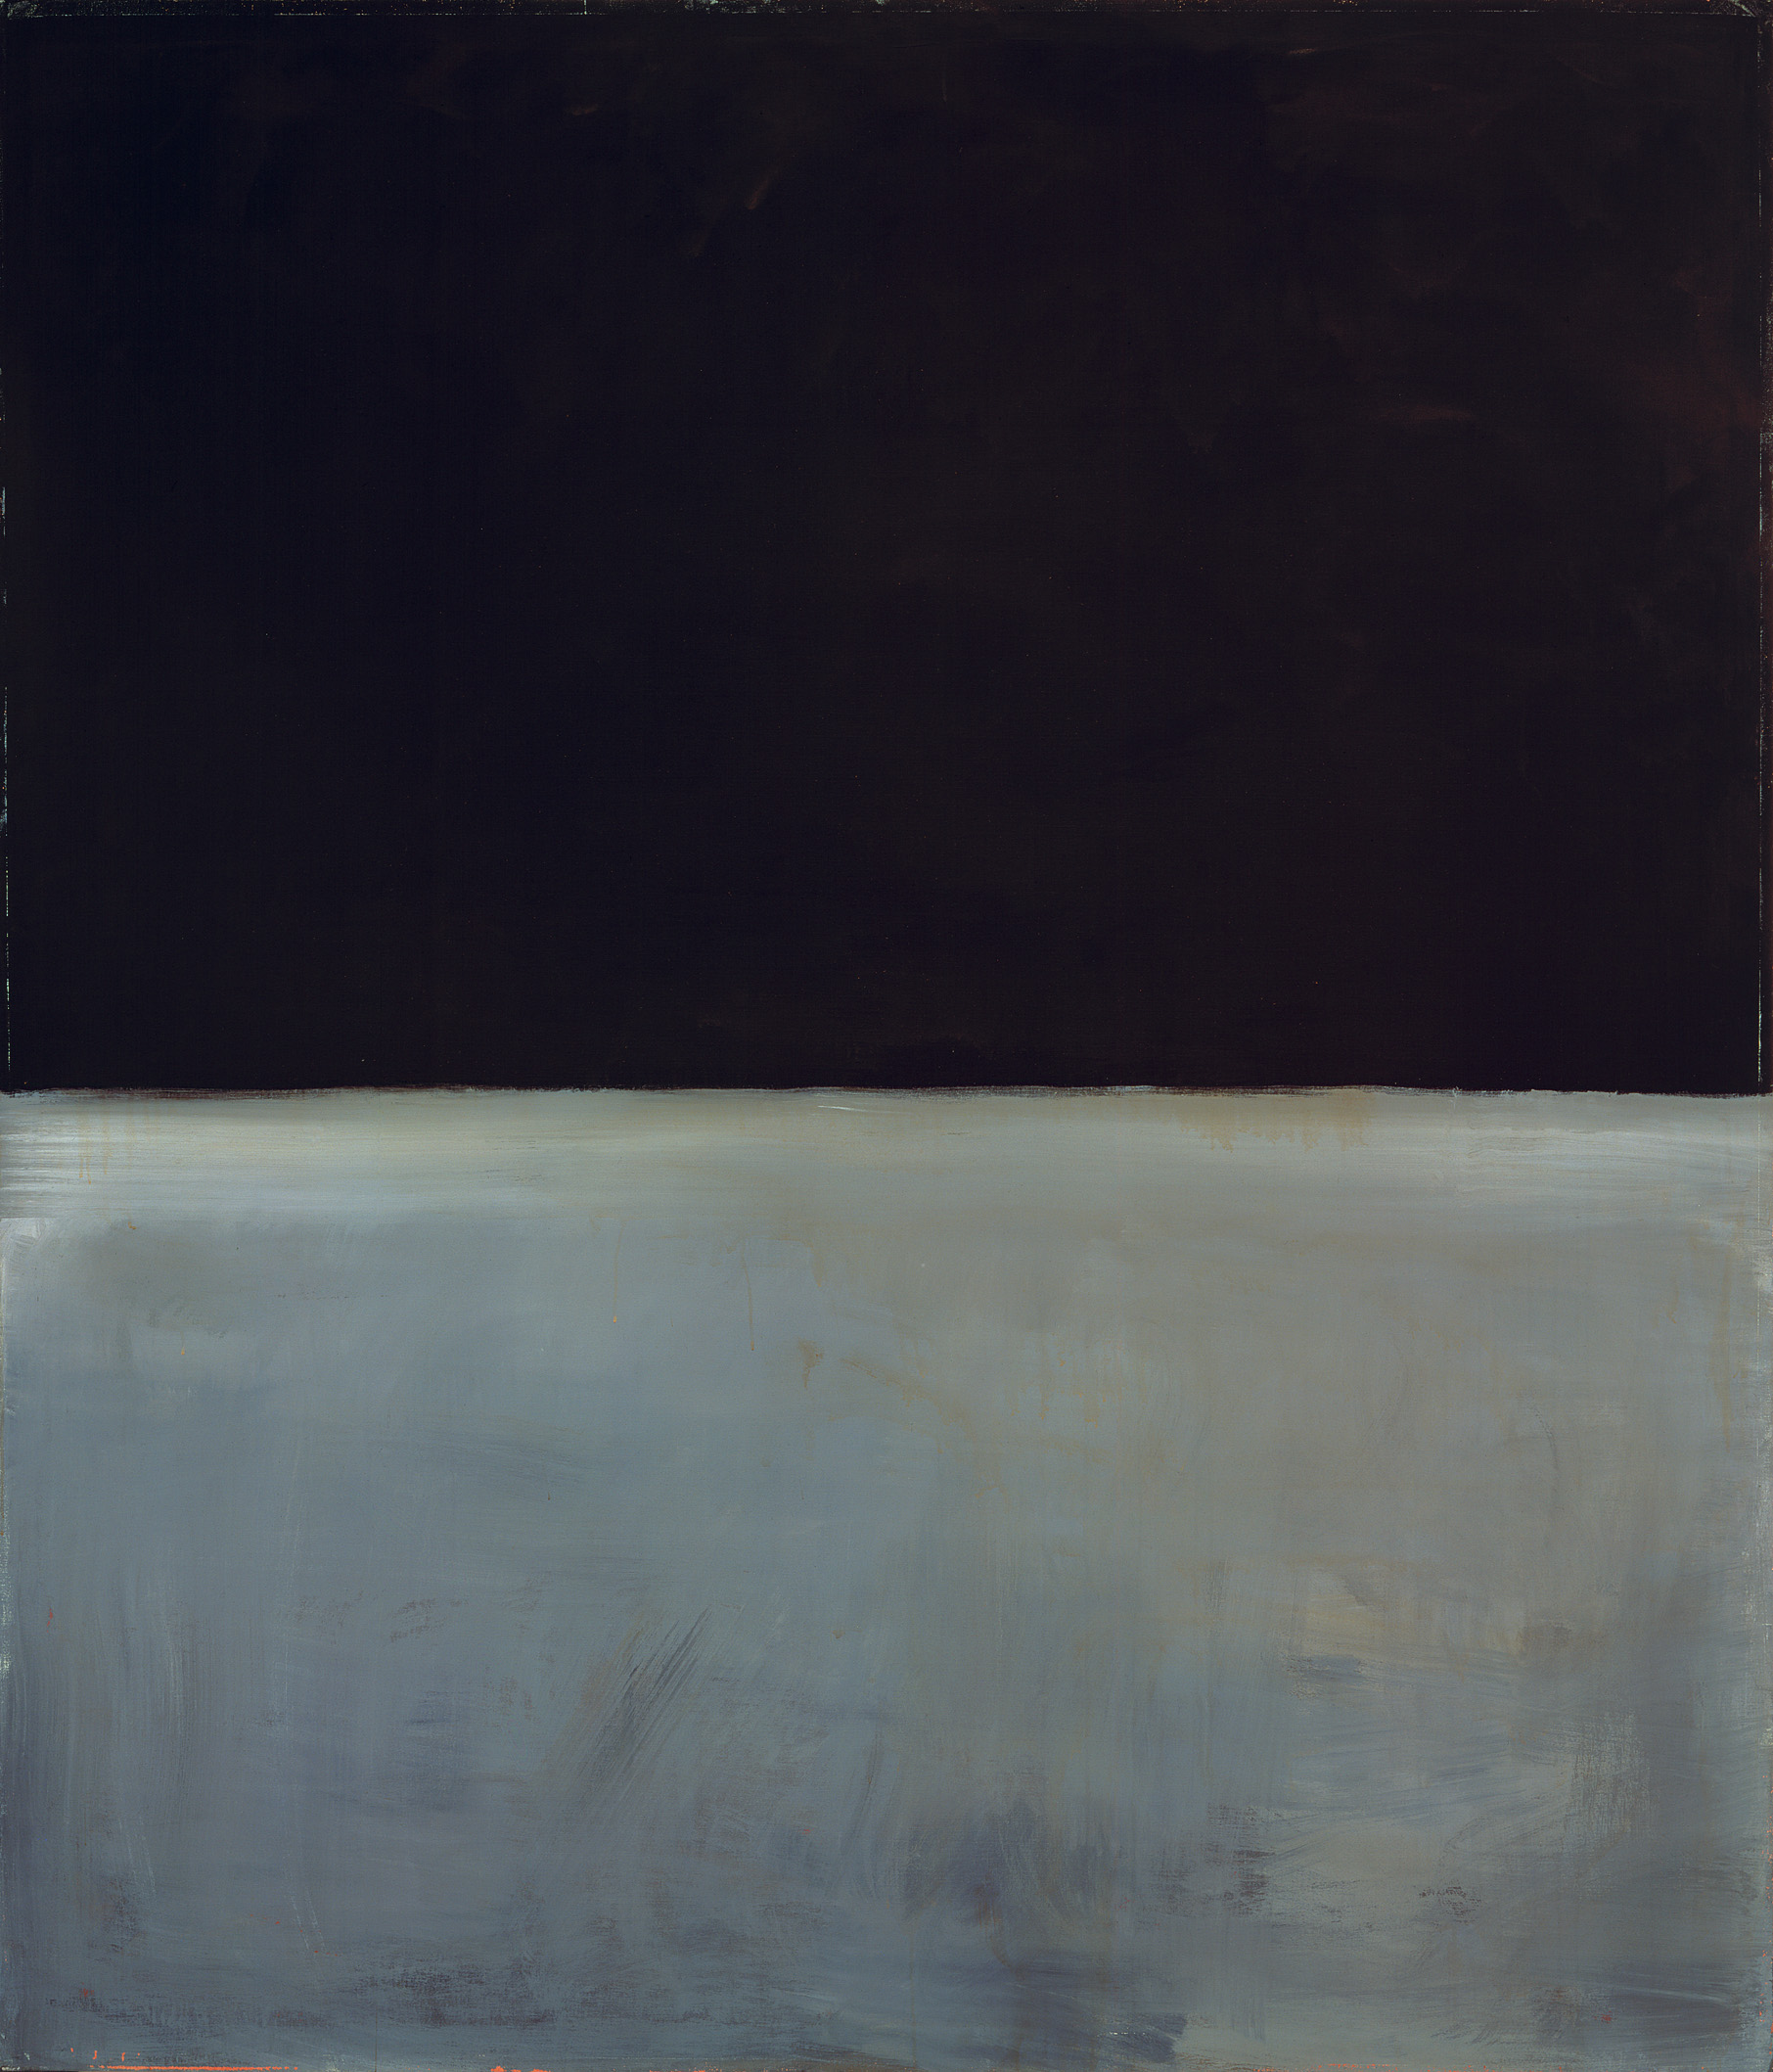 İsimsiz by Mark Rothko - 1969 - 233.7 × 200.3 cm Kunsthistorisches Museum